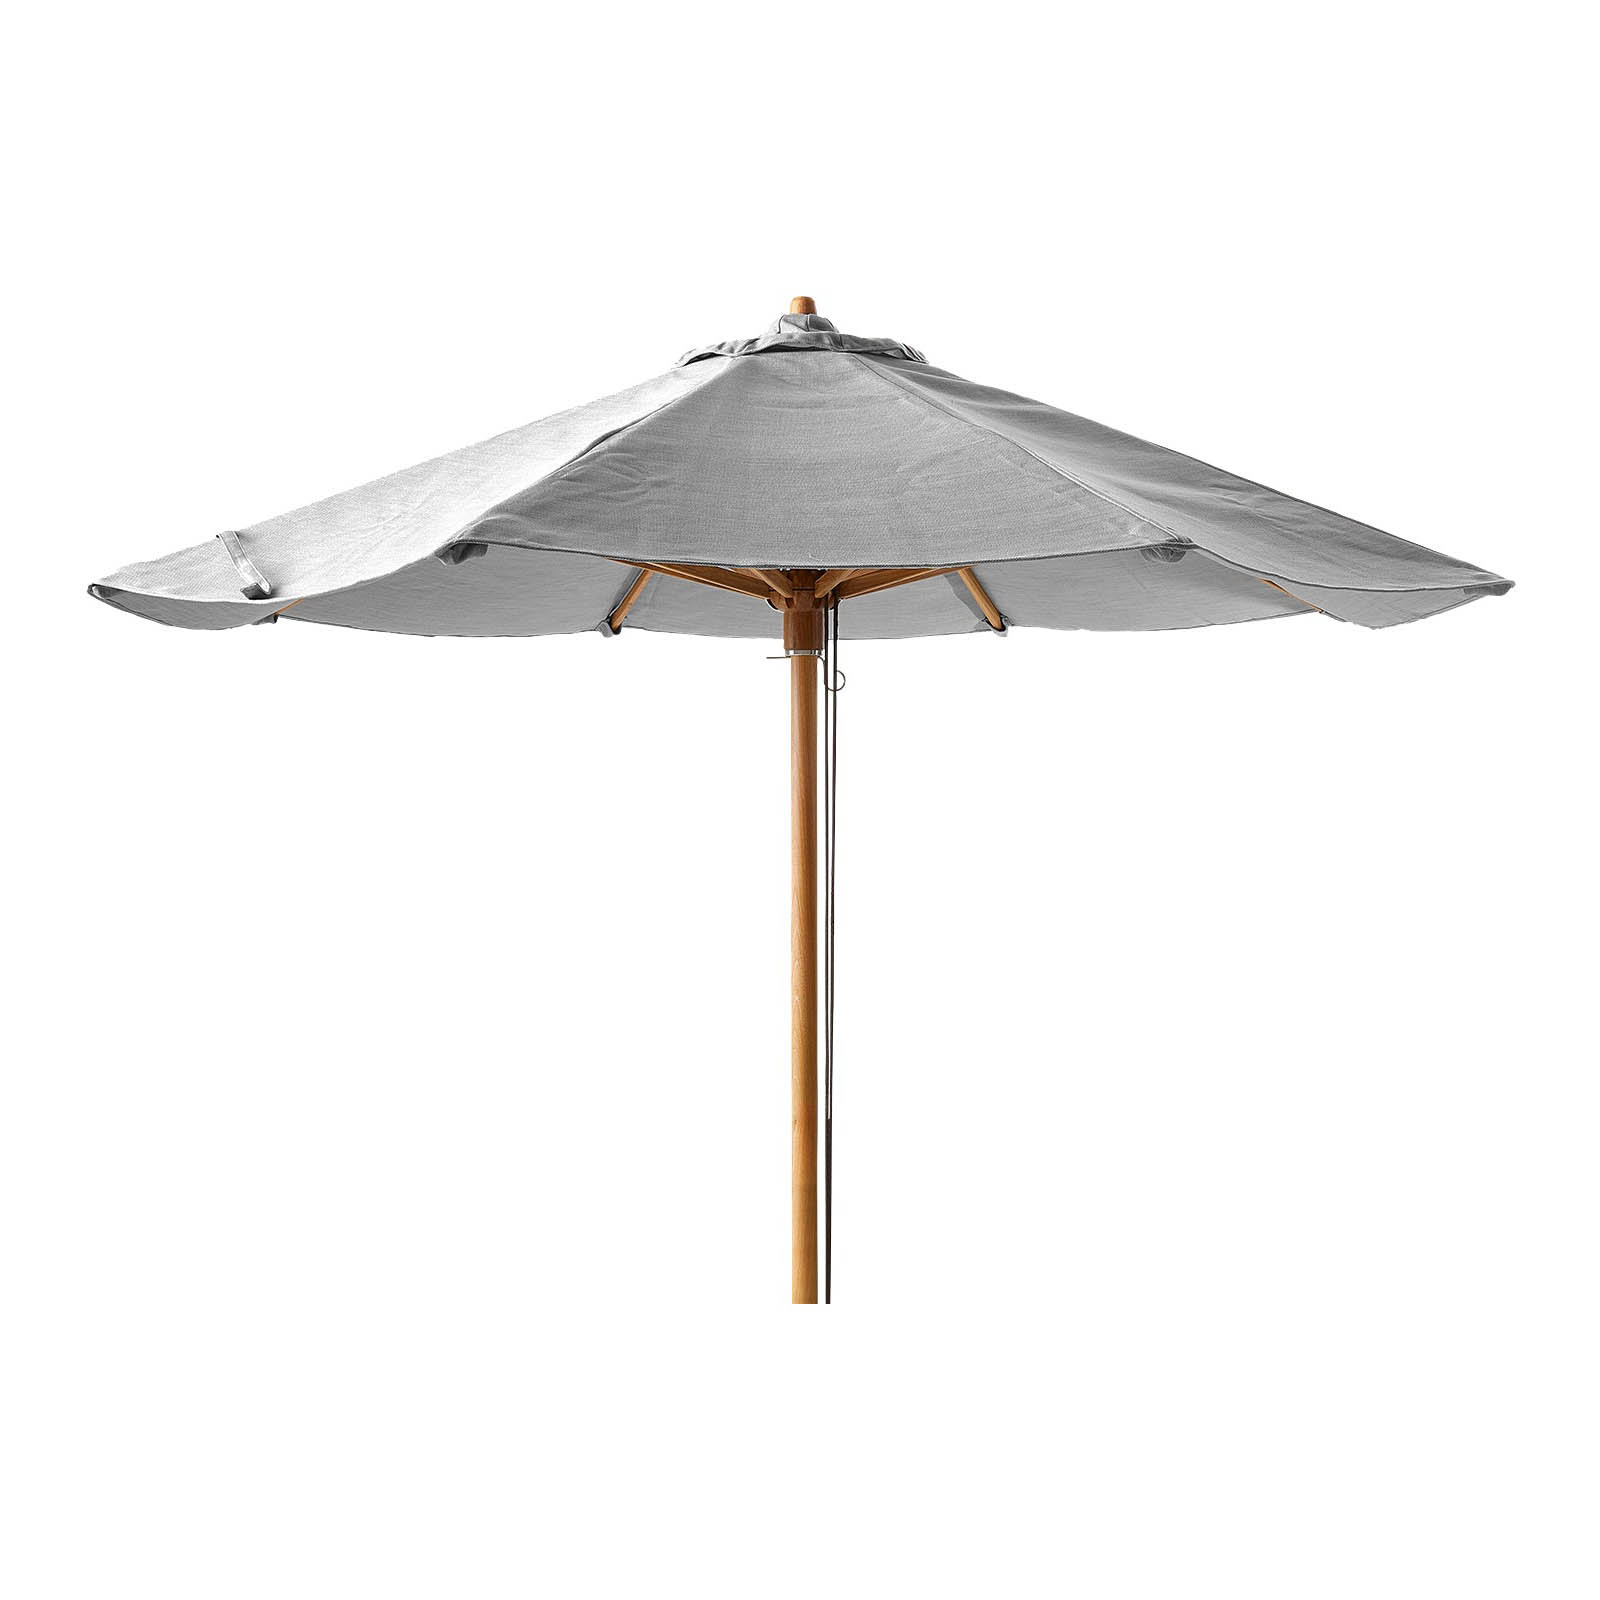 Classic Sonnenschirm mit Seilzug Durchmesser 3 m niedrig für Peacock daybed aus Teak